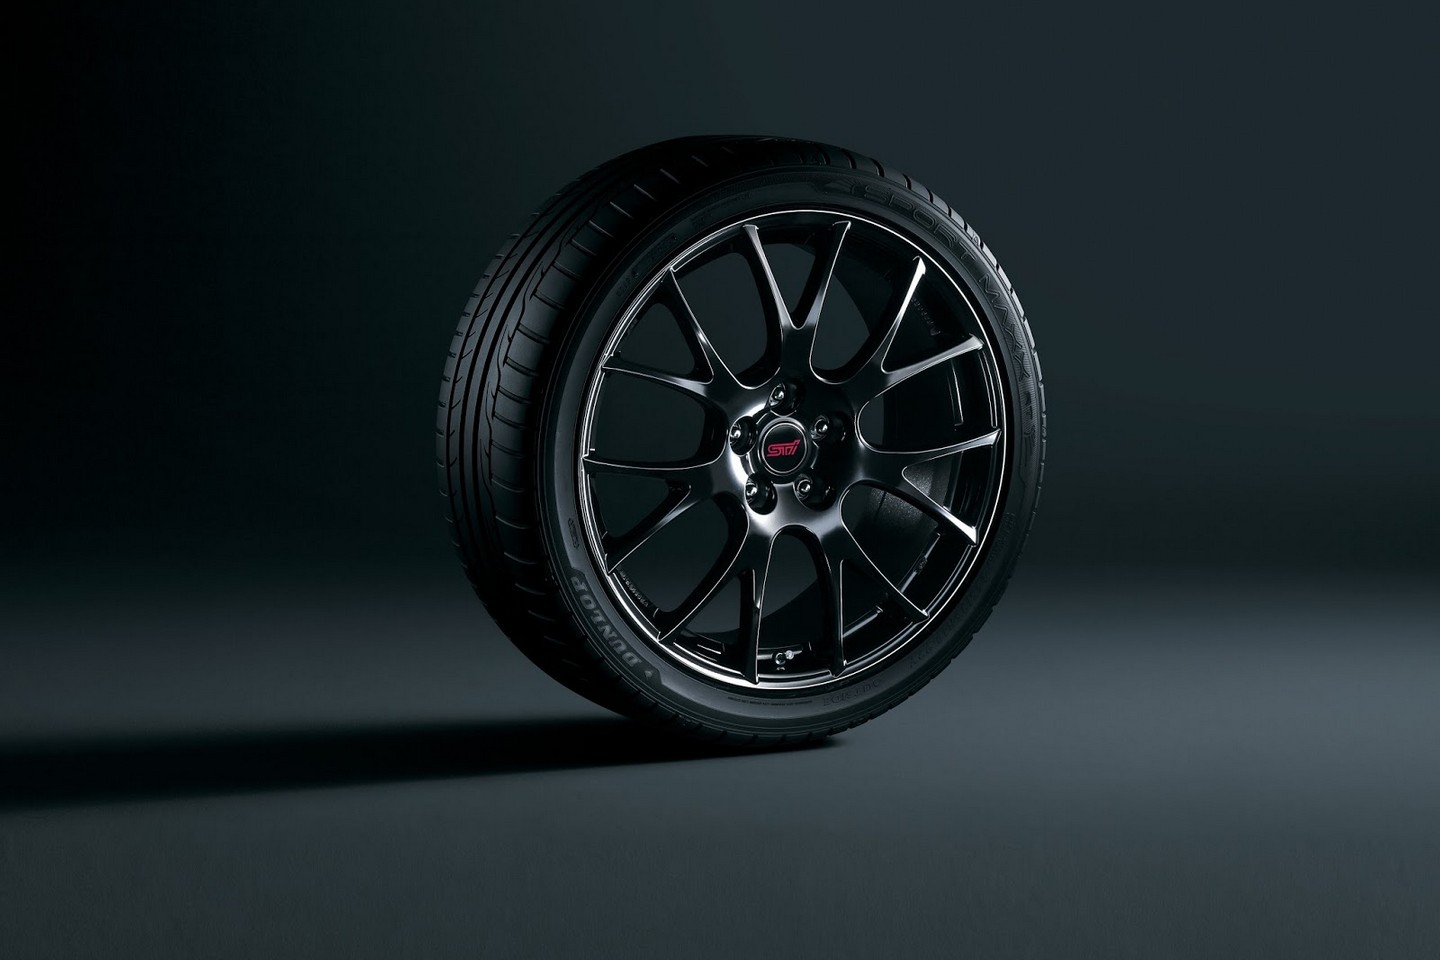 subaru-wrx-sti-s207-limited-edition-wheels - ForceGT.com